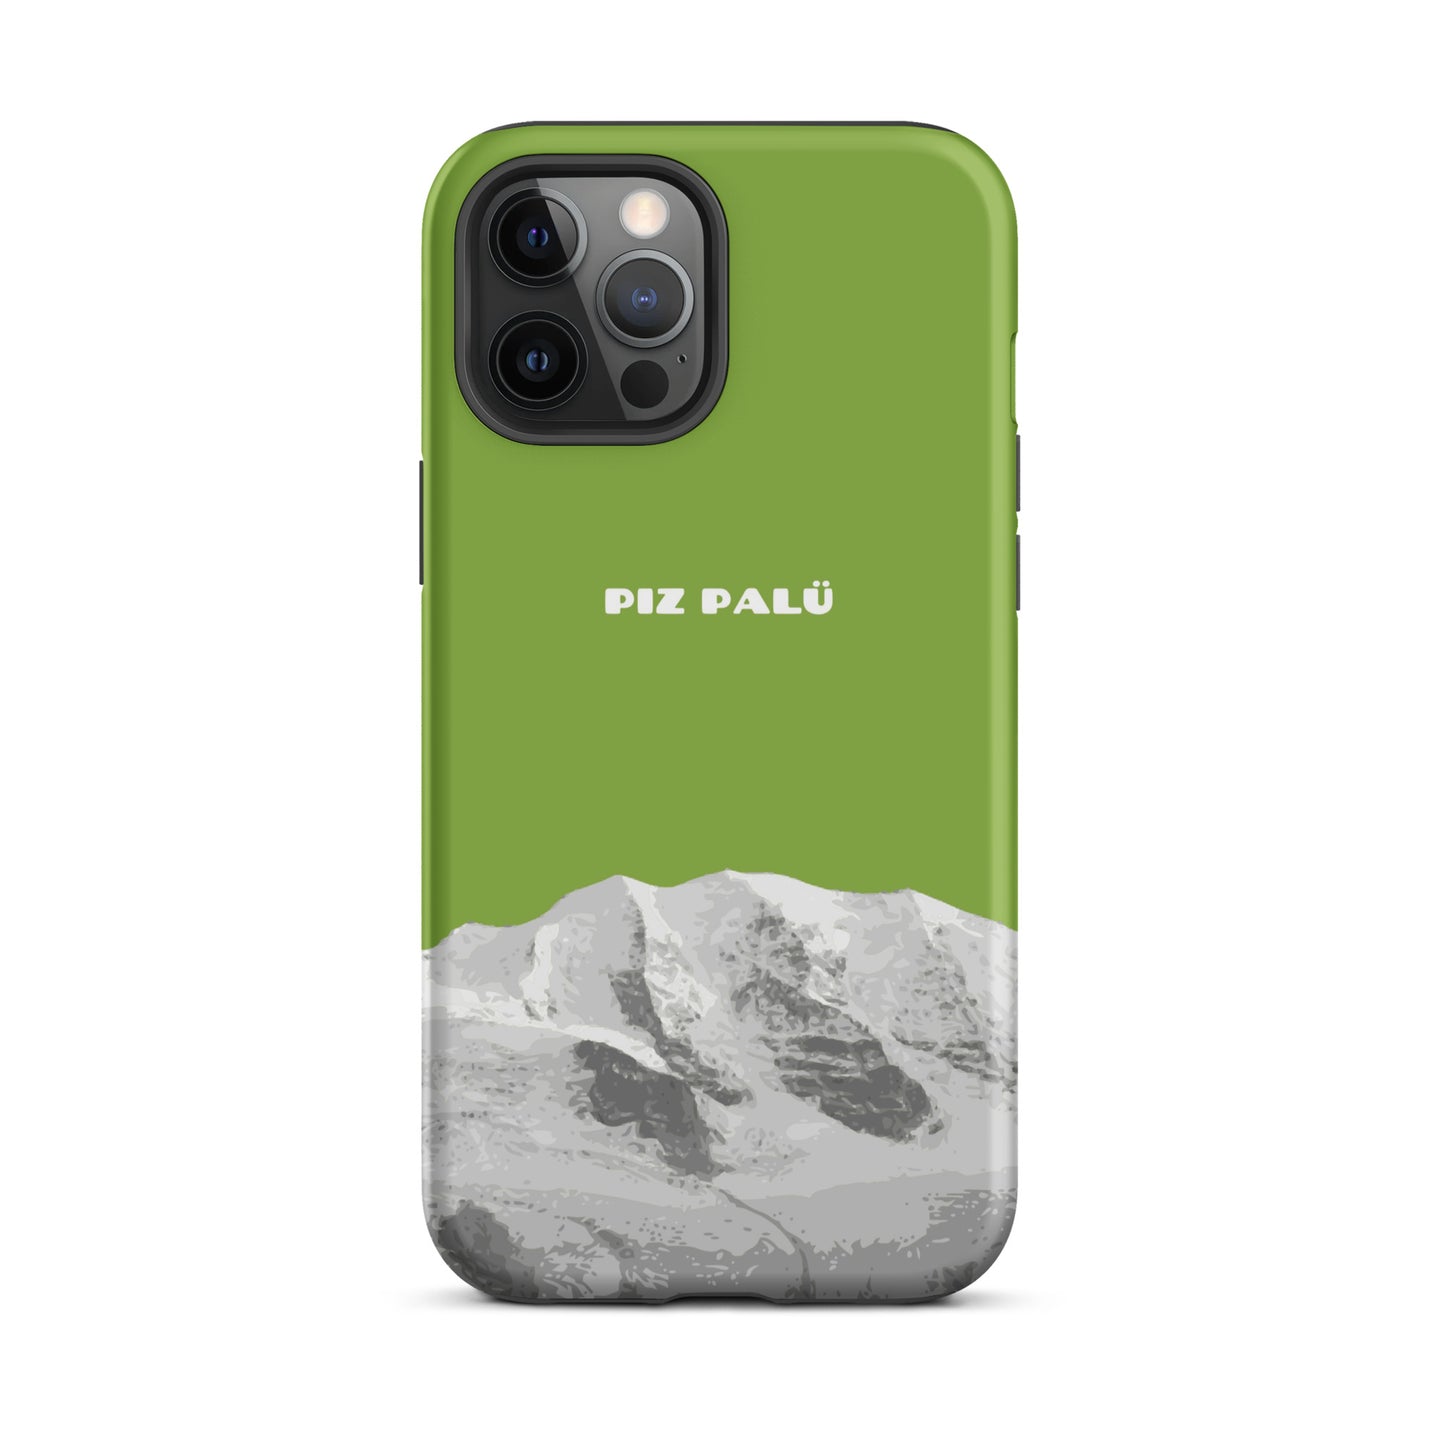 Hülle für das iPhone 12 Pro Max von Apple in der Farbe Gelbgrün, dass den Piz Palü in Graubünden zeigt. 